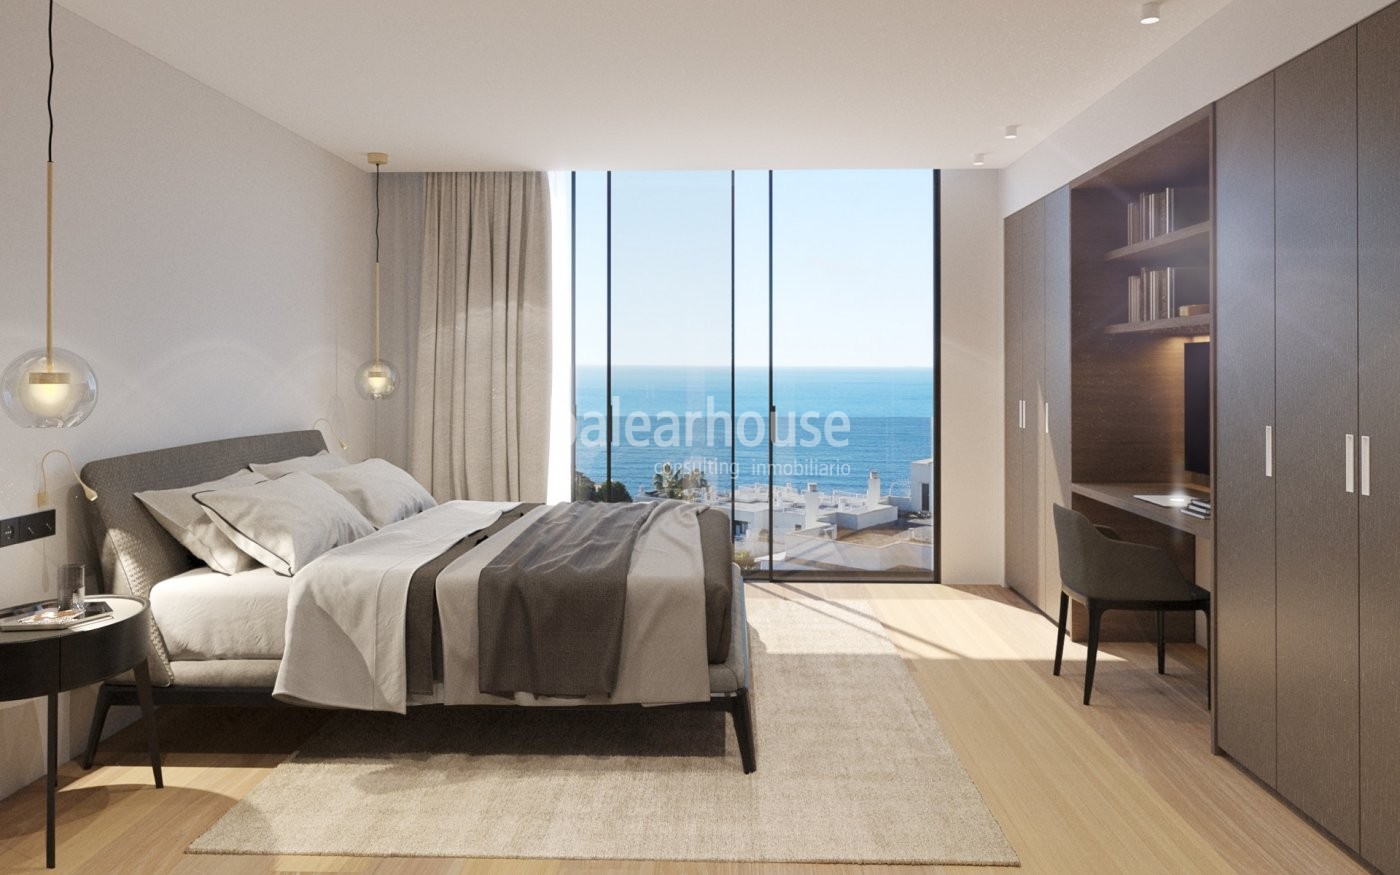 Espectacular piso de diseño contemporáneo abierto a unas deslumbrantes vistas al mar.